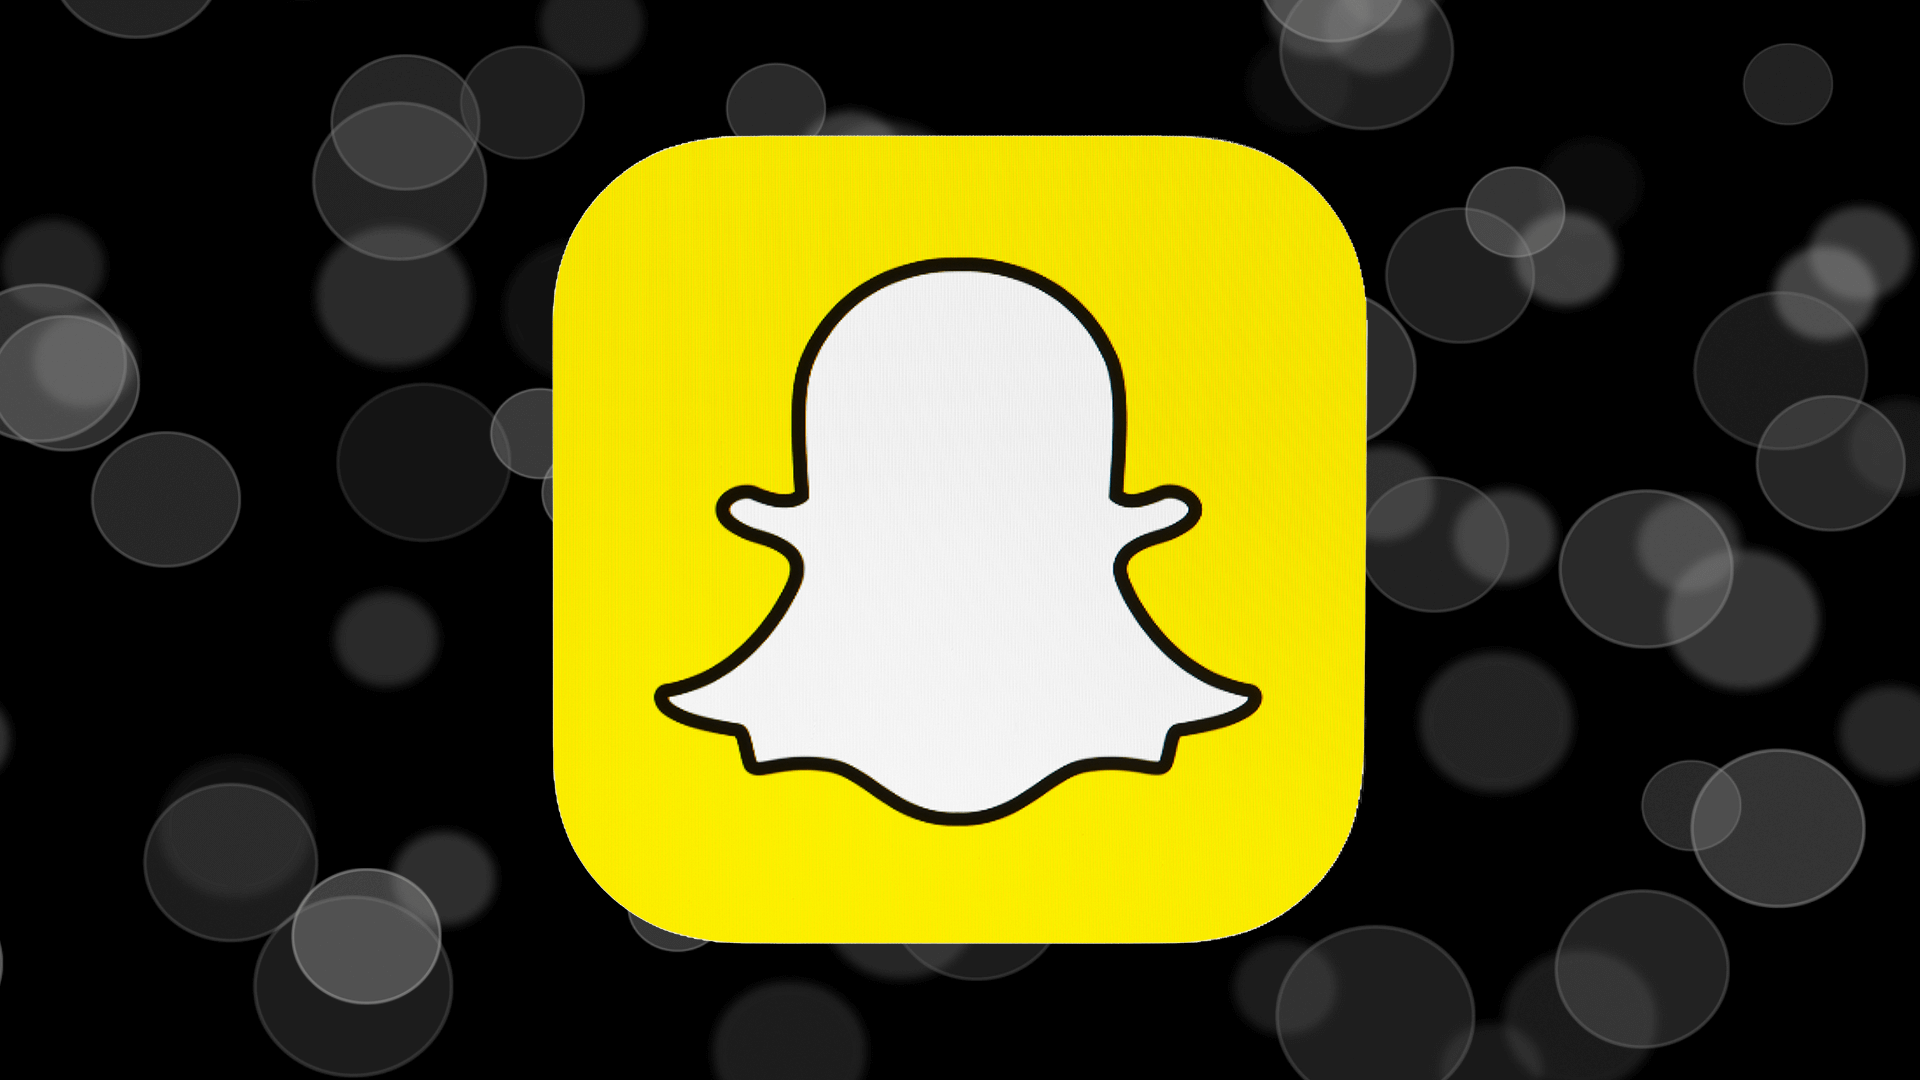 Sfaturi pentru utilizarea corecta a platformei Snapchat